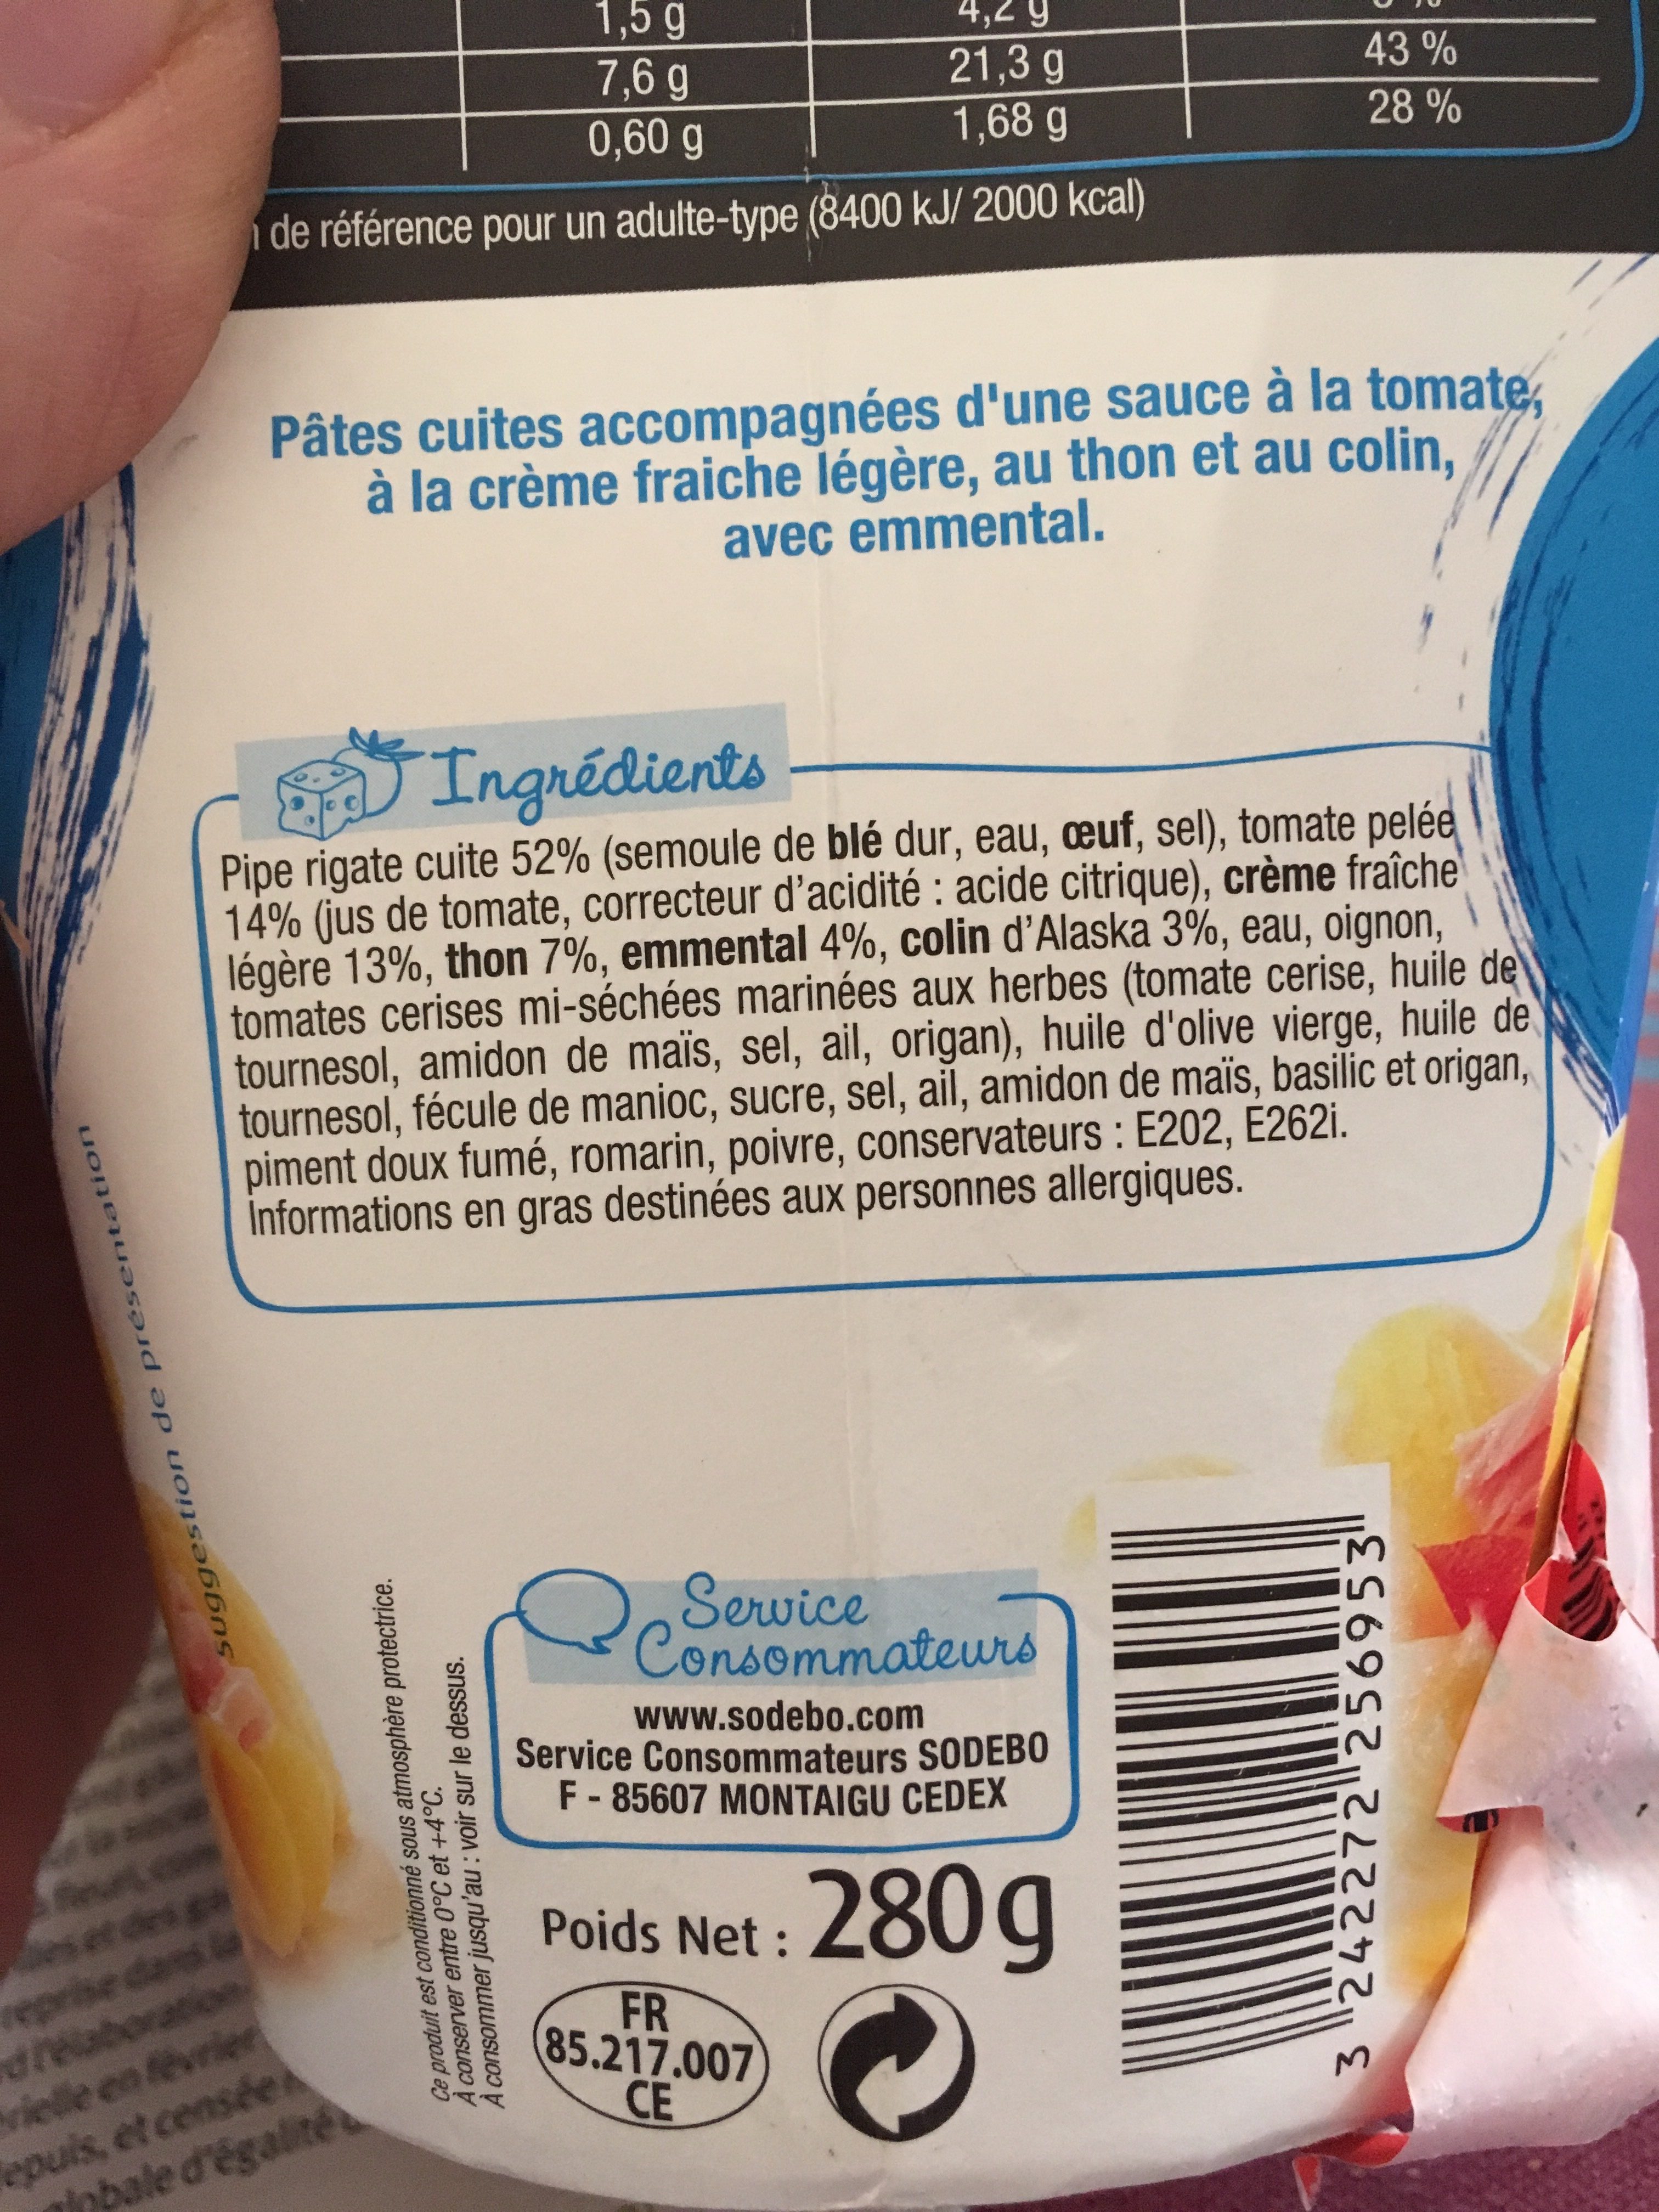 CremioBox - Thon à la crème - Ingredients - fr